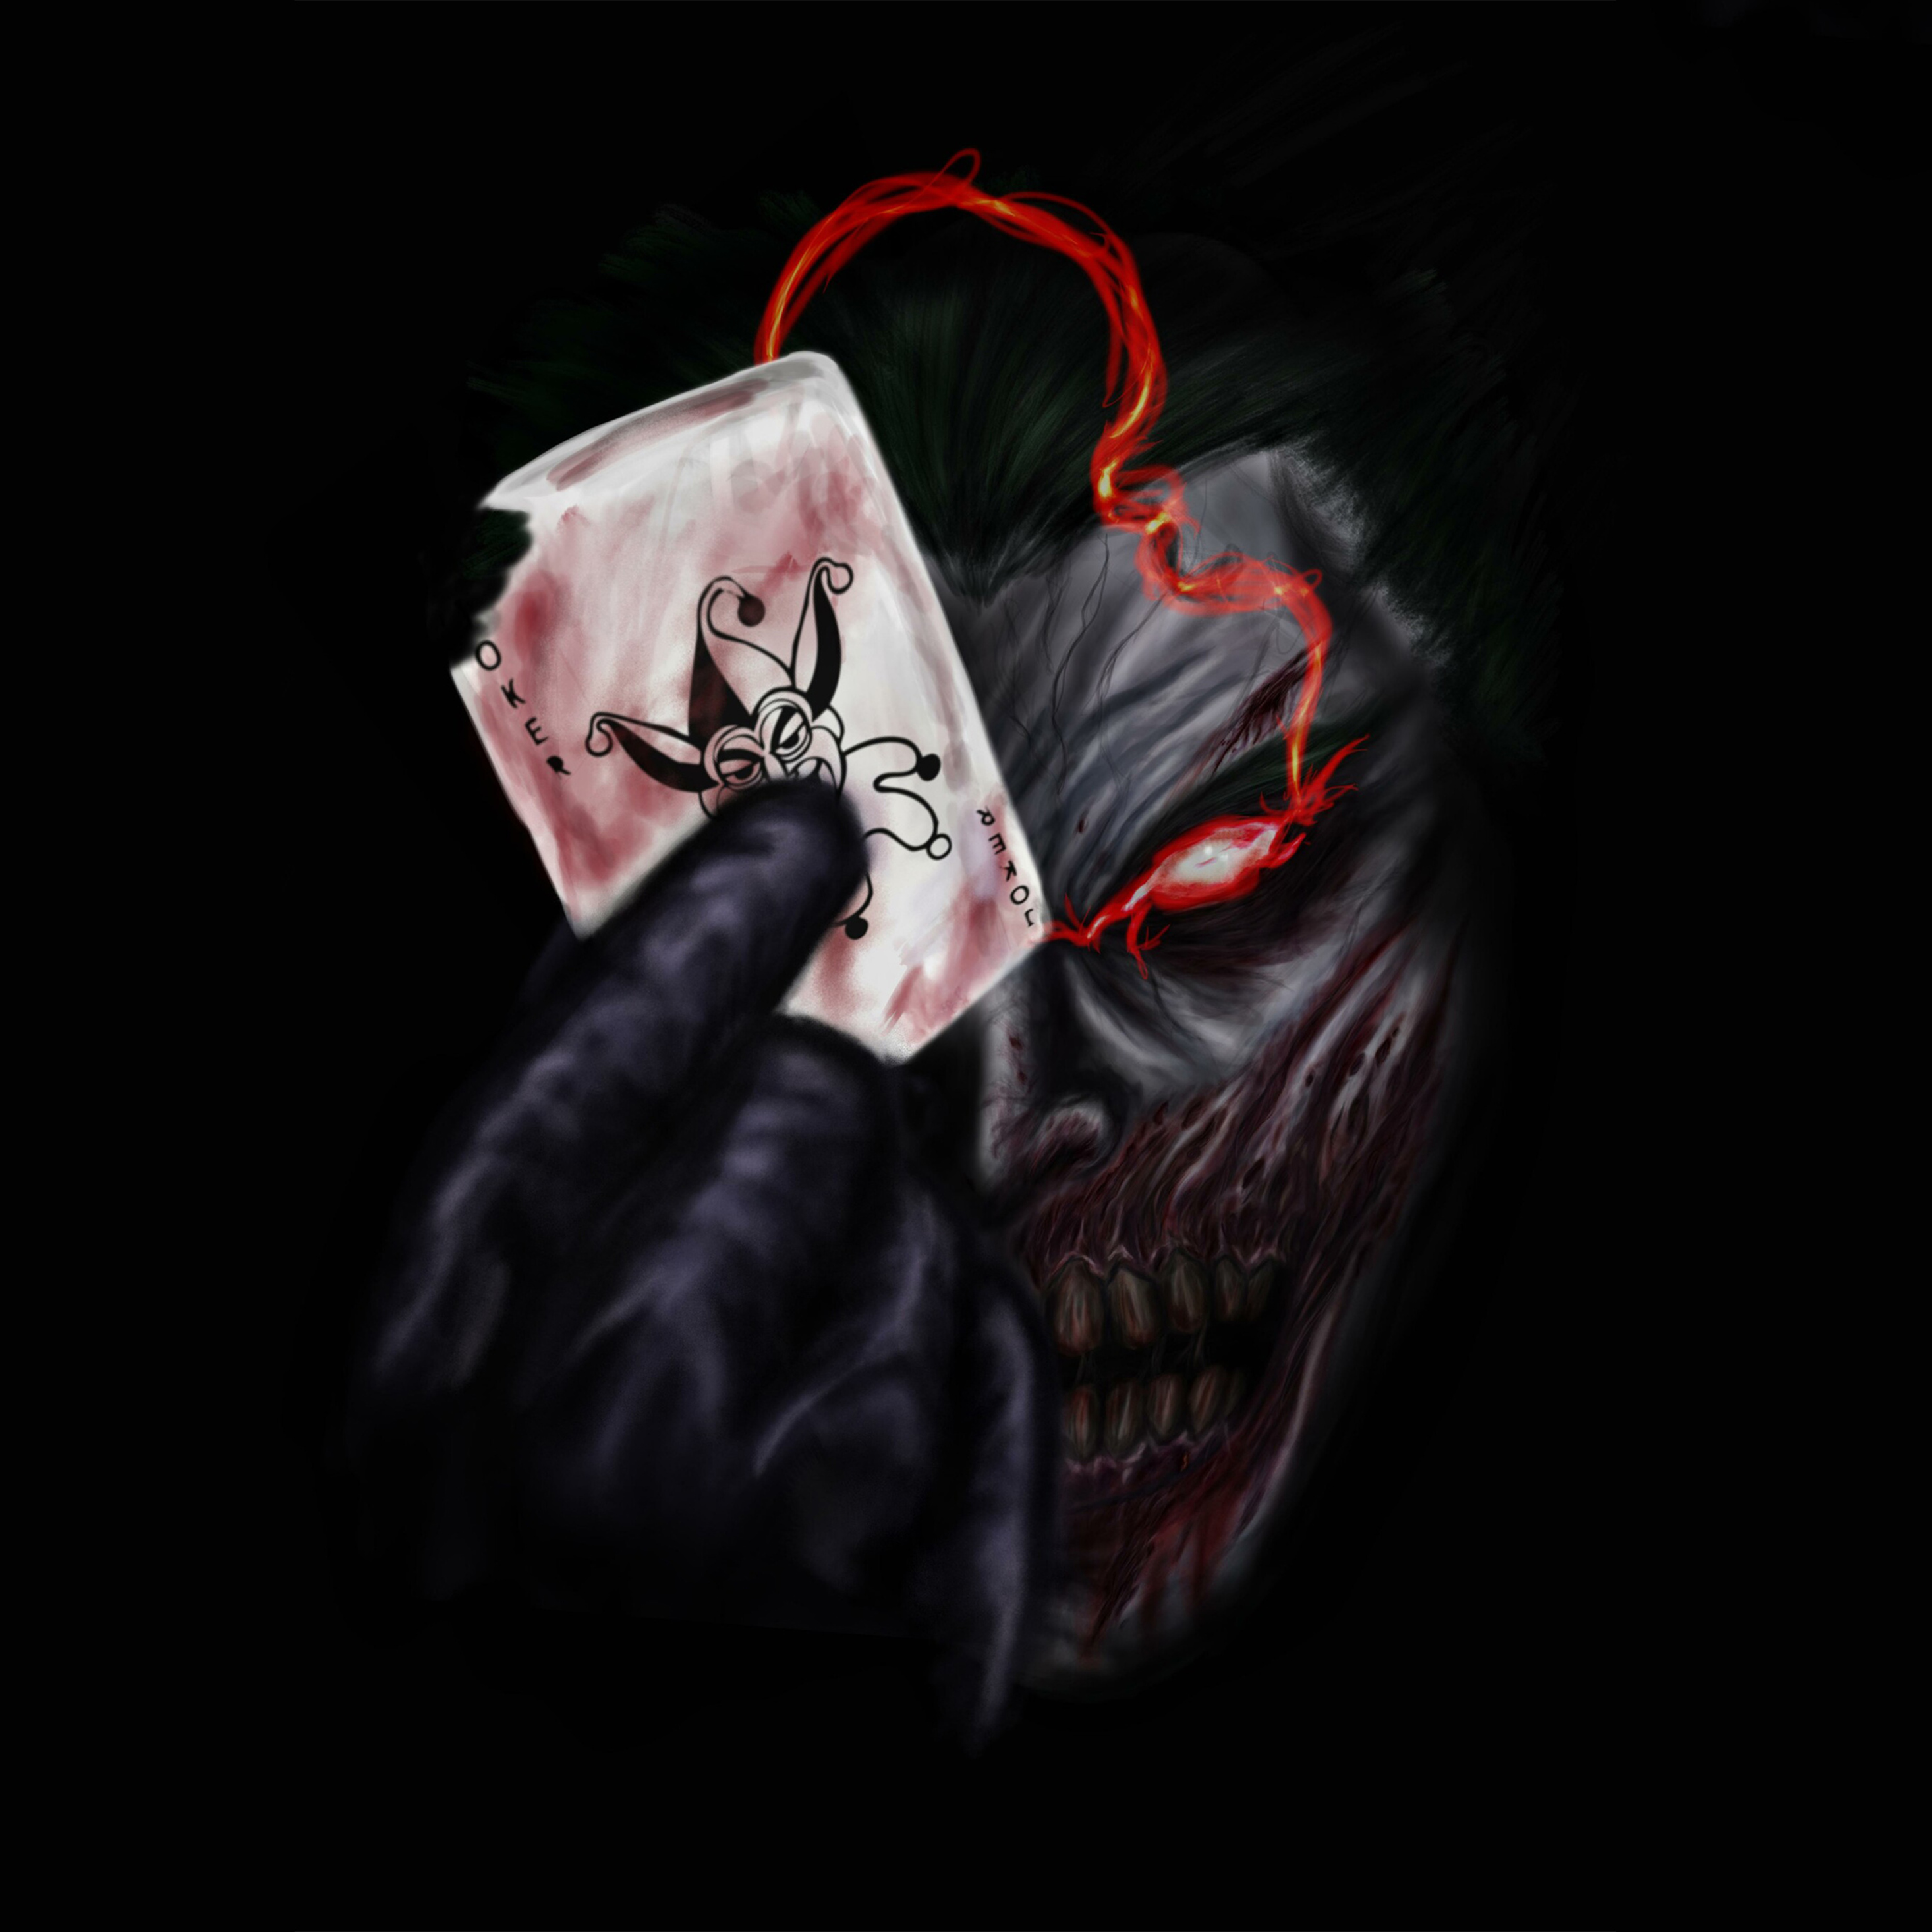 Black Joker 4K Wallpapers